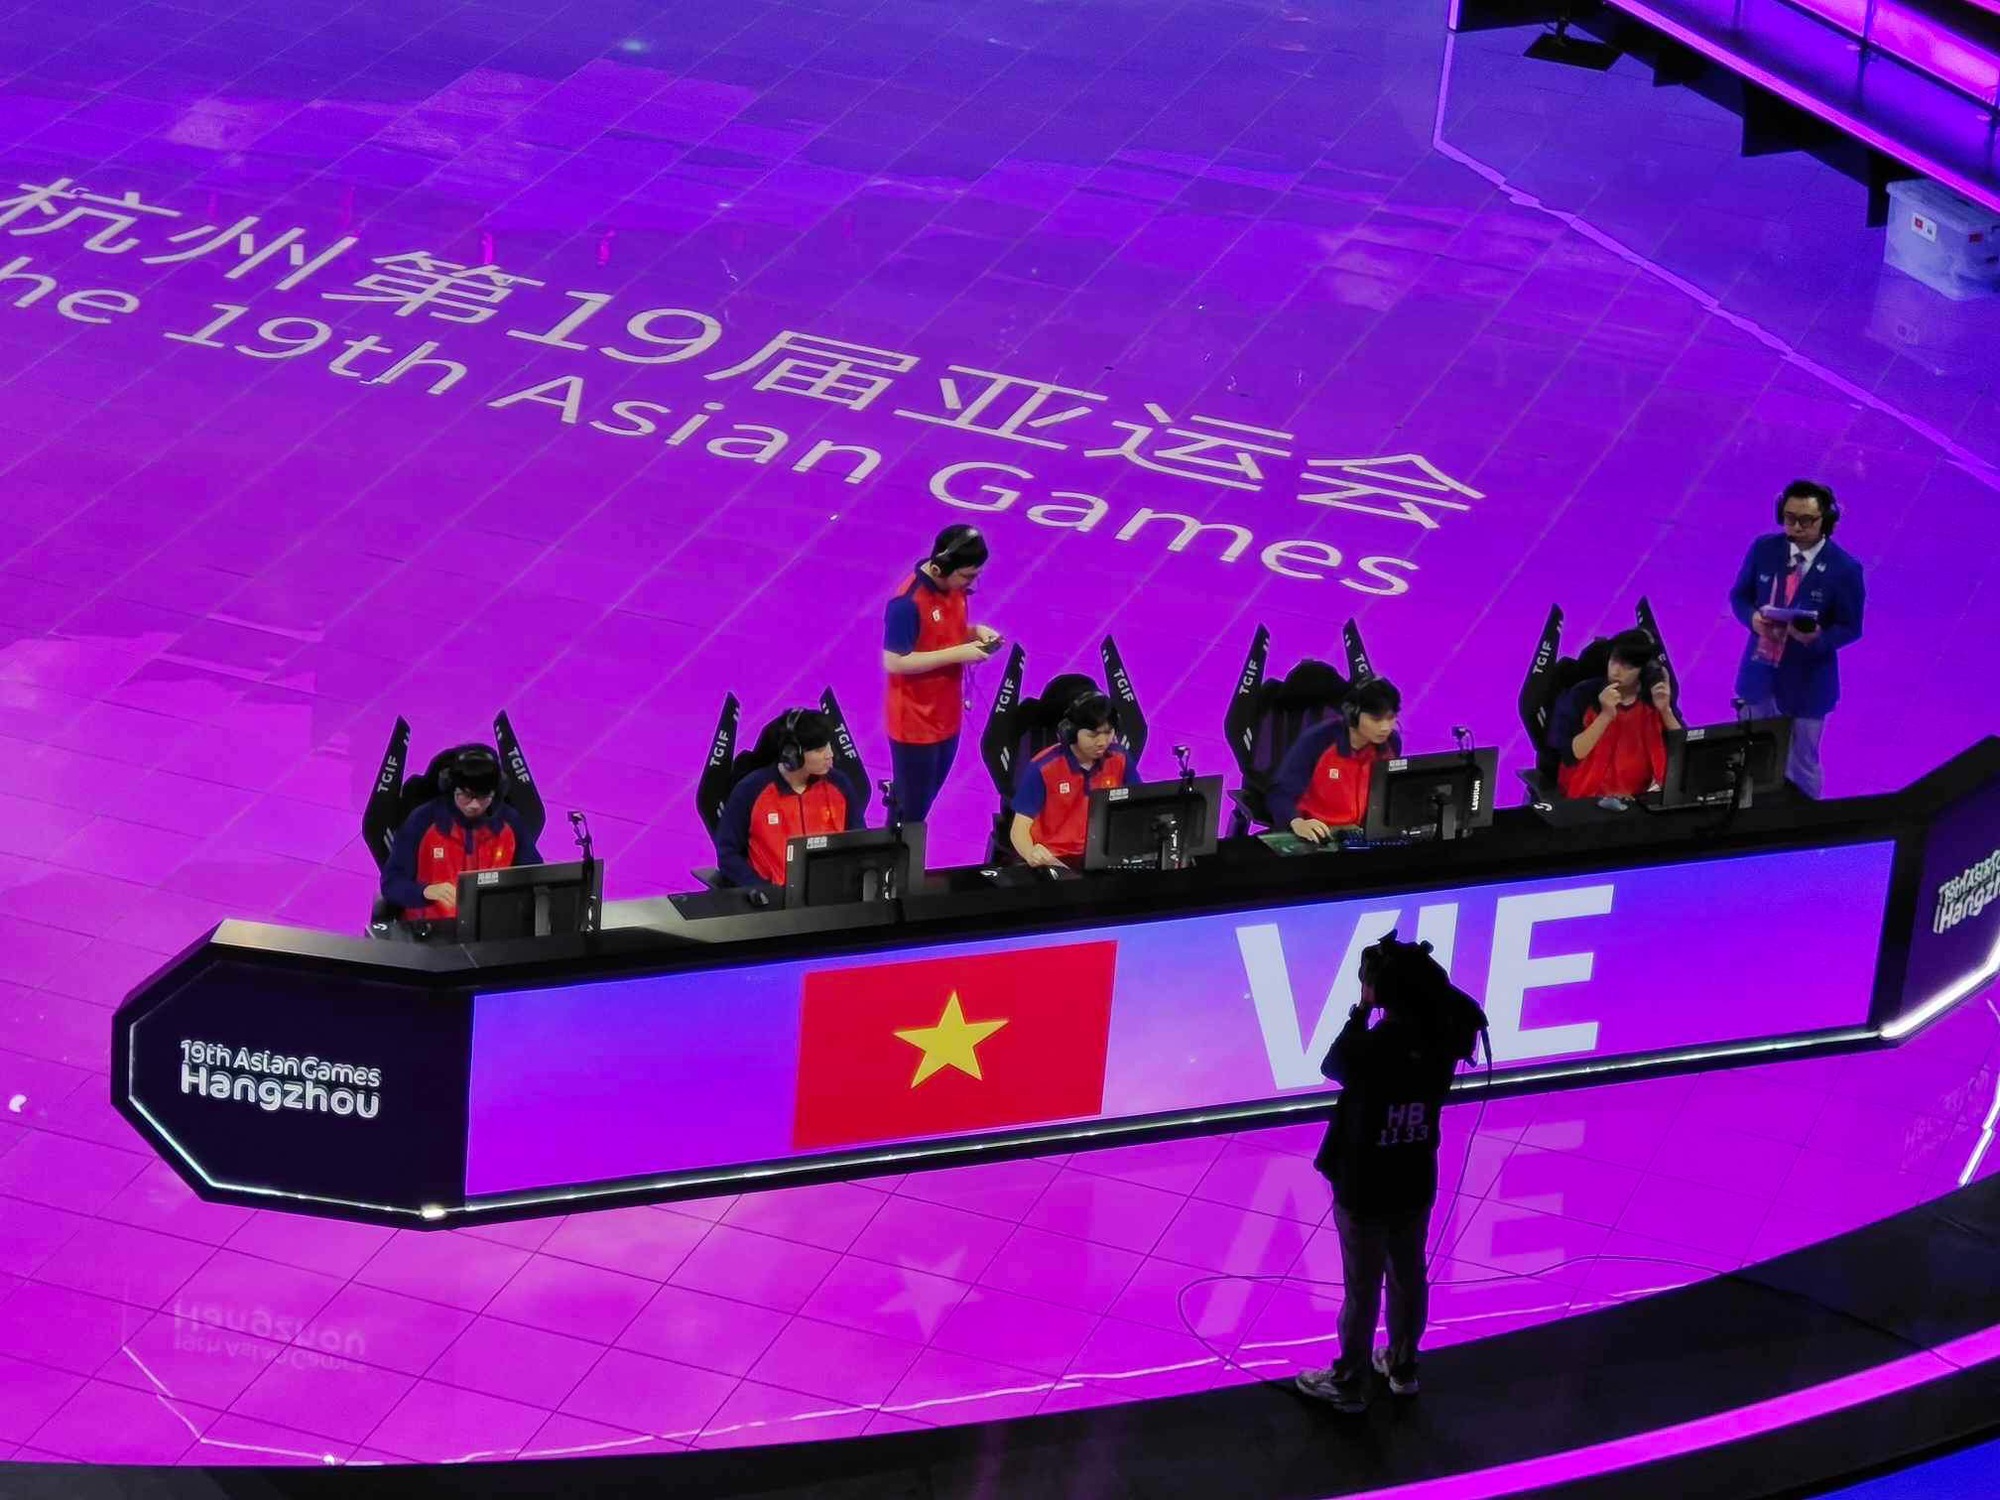 ASIAD 19 ngày 29-9: Trần Thị Nhi Yến vào chung kết cự ly 100m nữ - Ảnh 13.